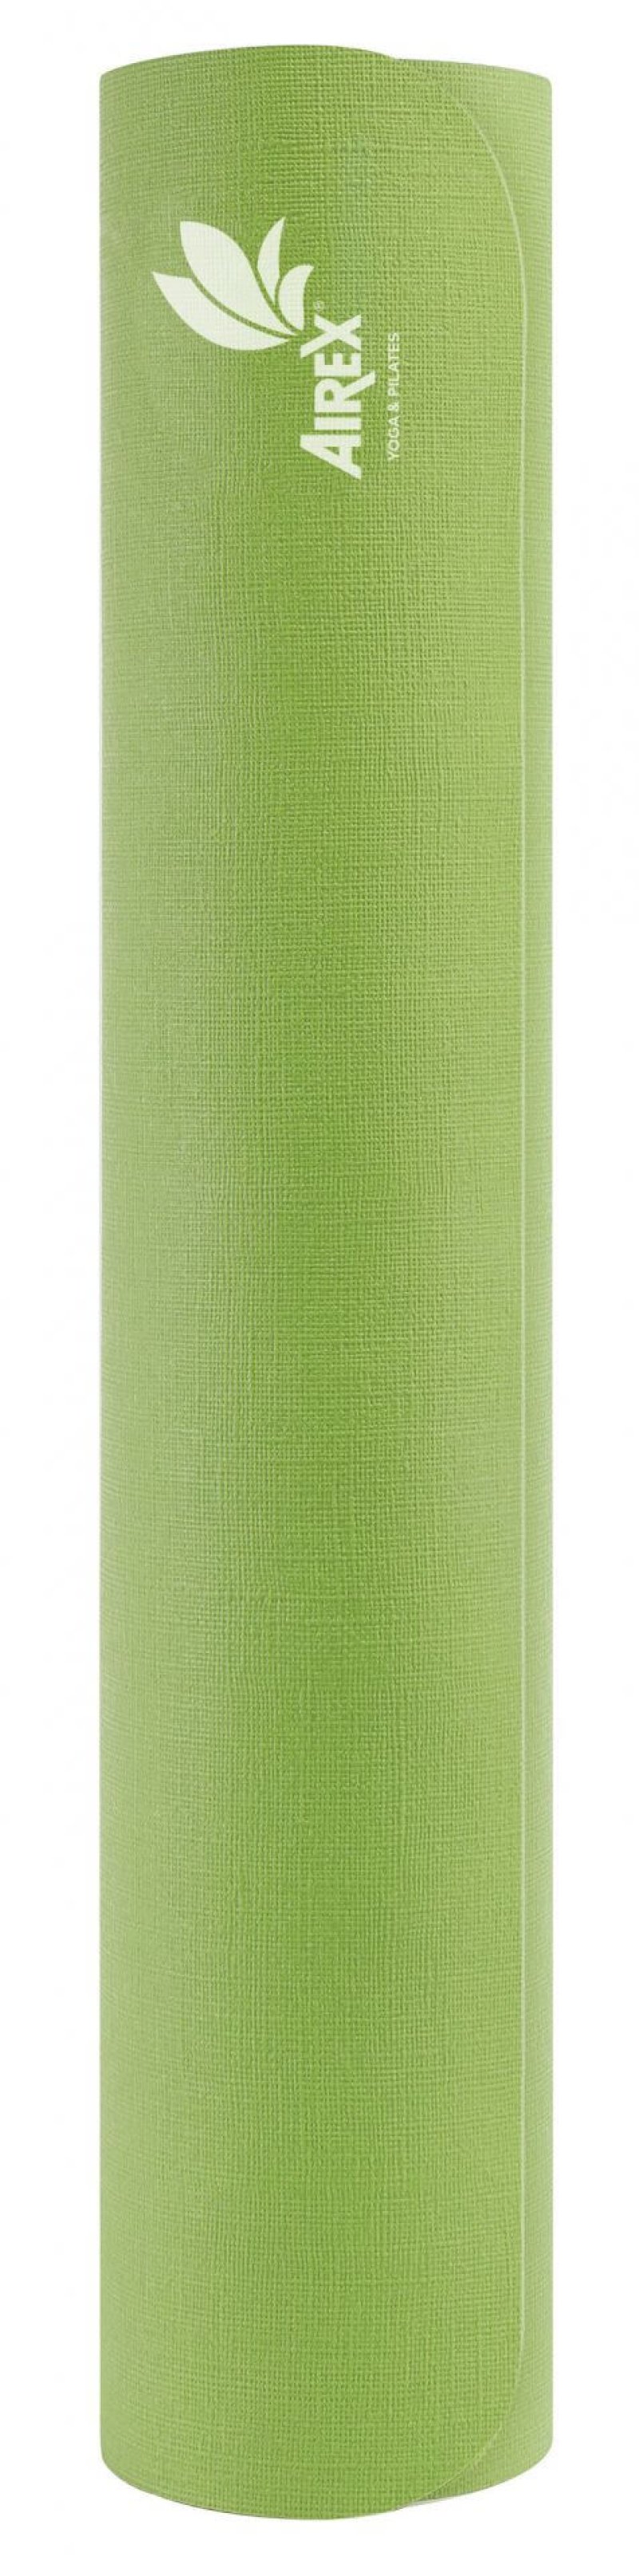 Joogamatt Calyana Advanced Lime green - Hazel, paksus 4,5mm, mõõtmed: 65 x 185mm